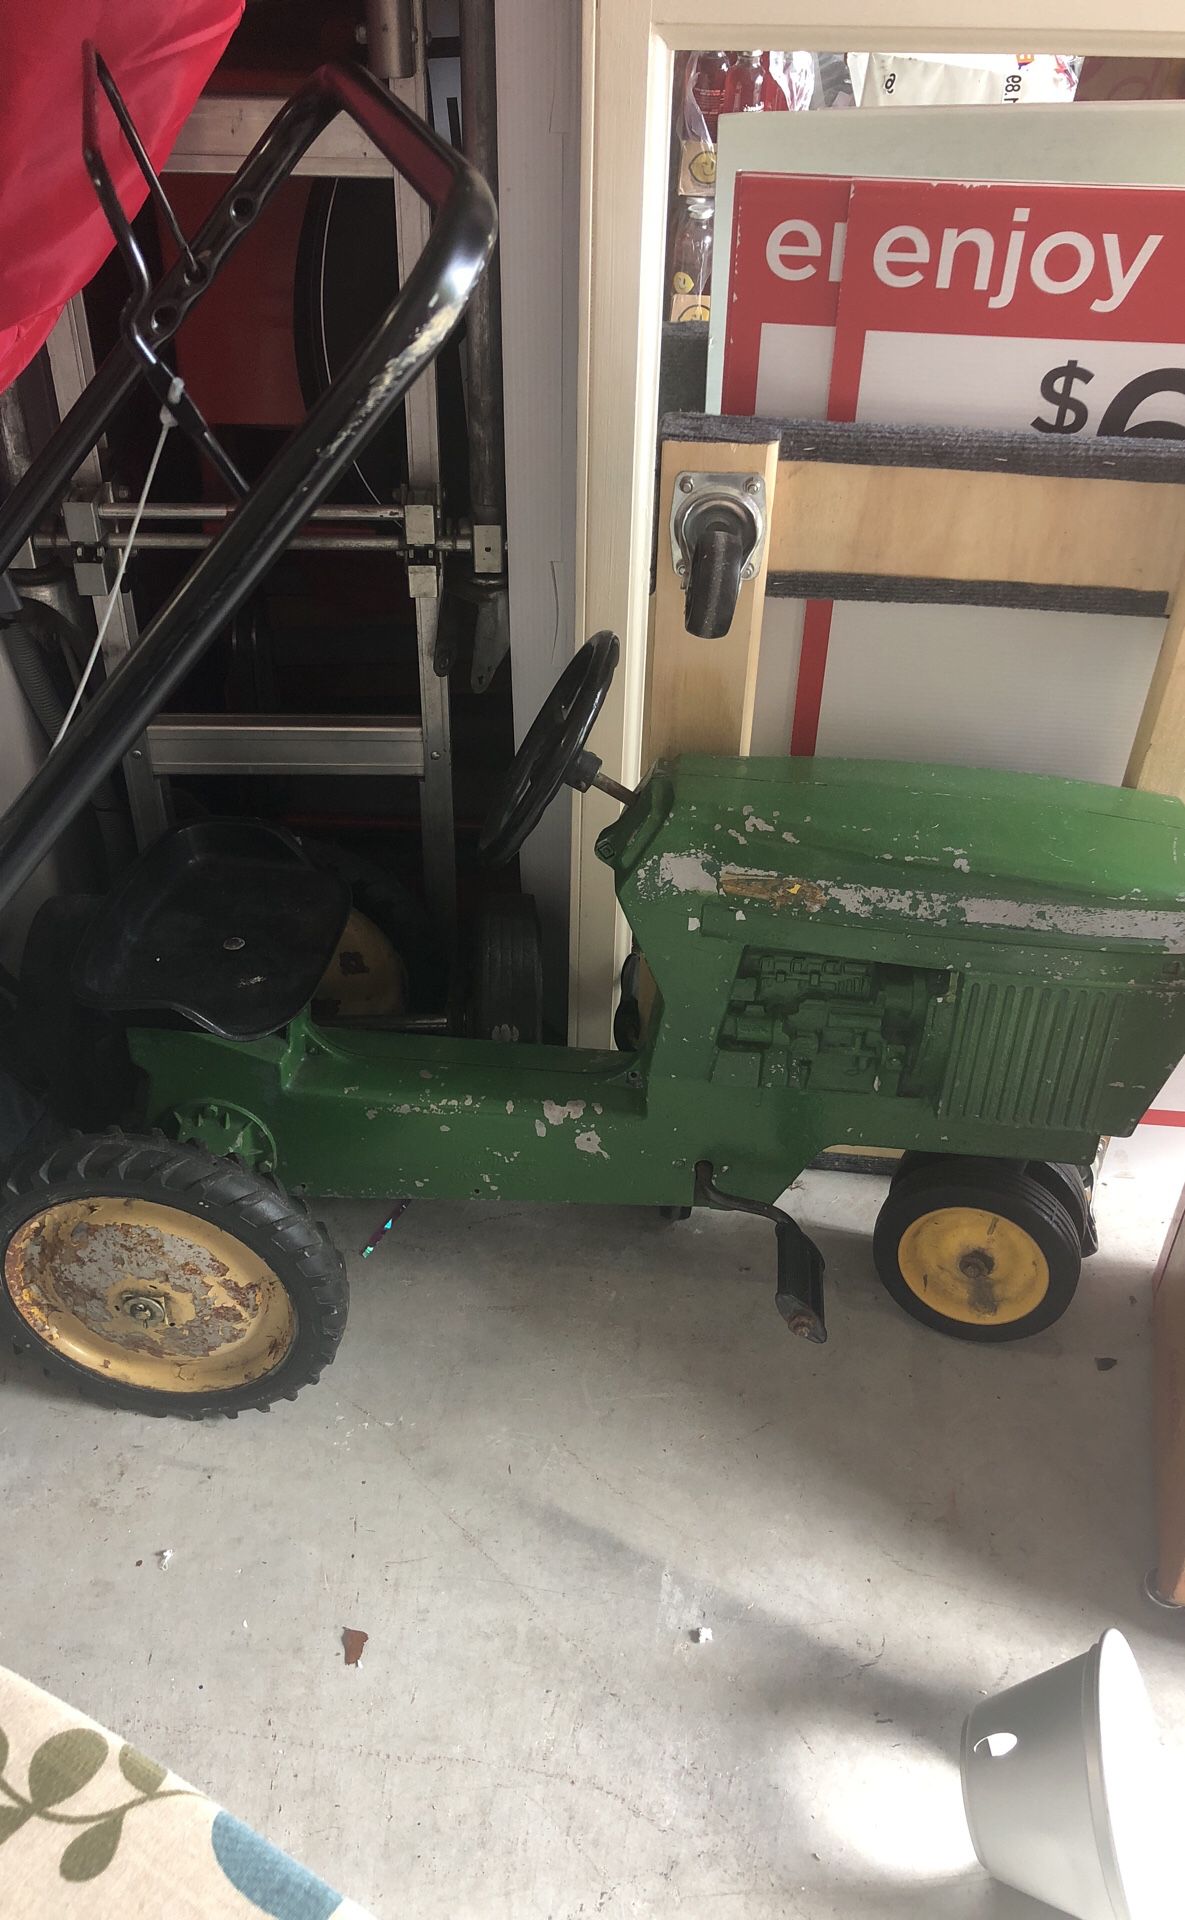 Tractor prop